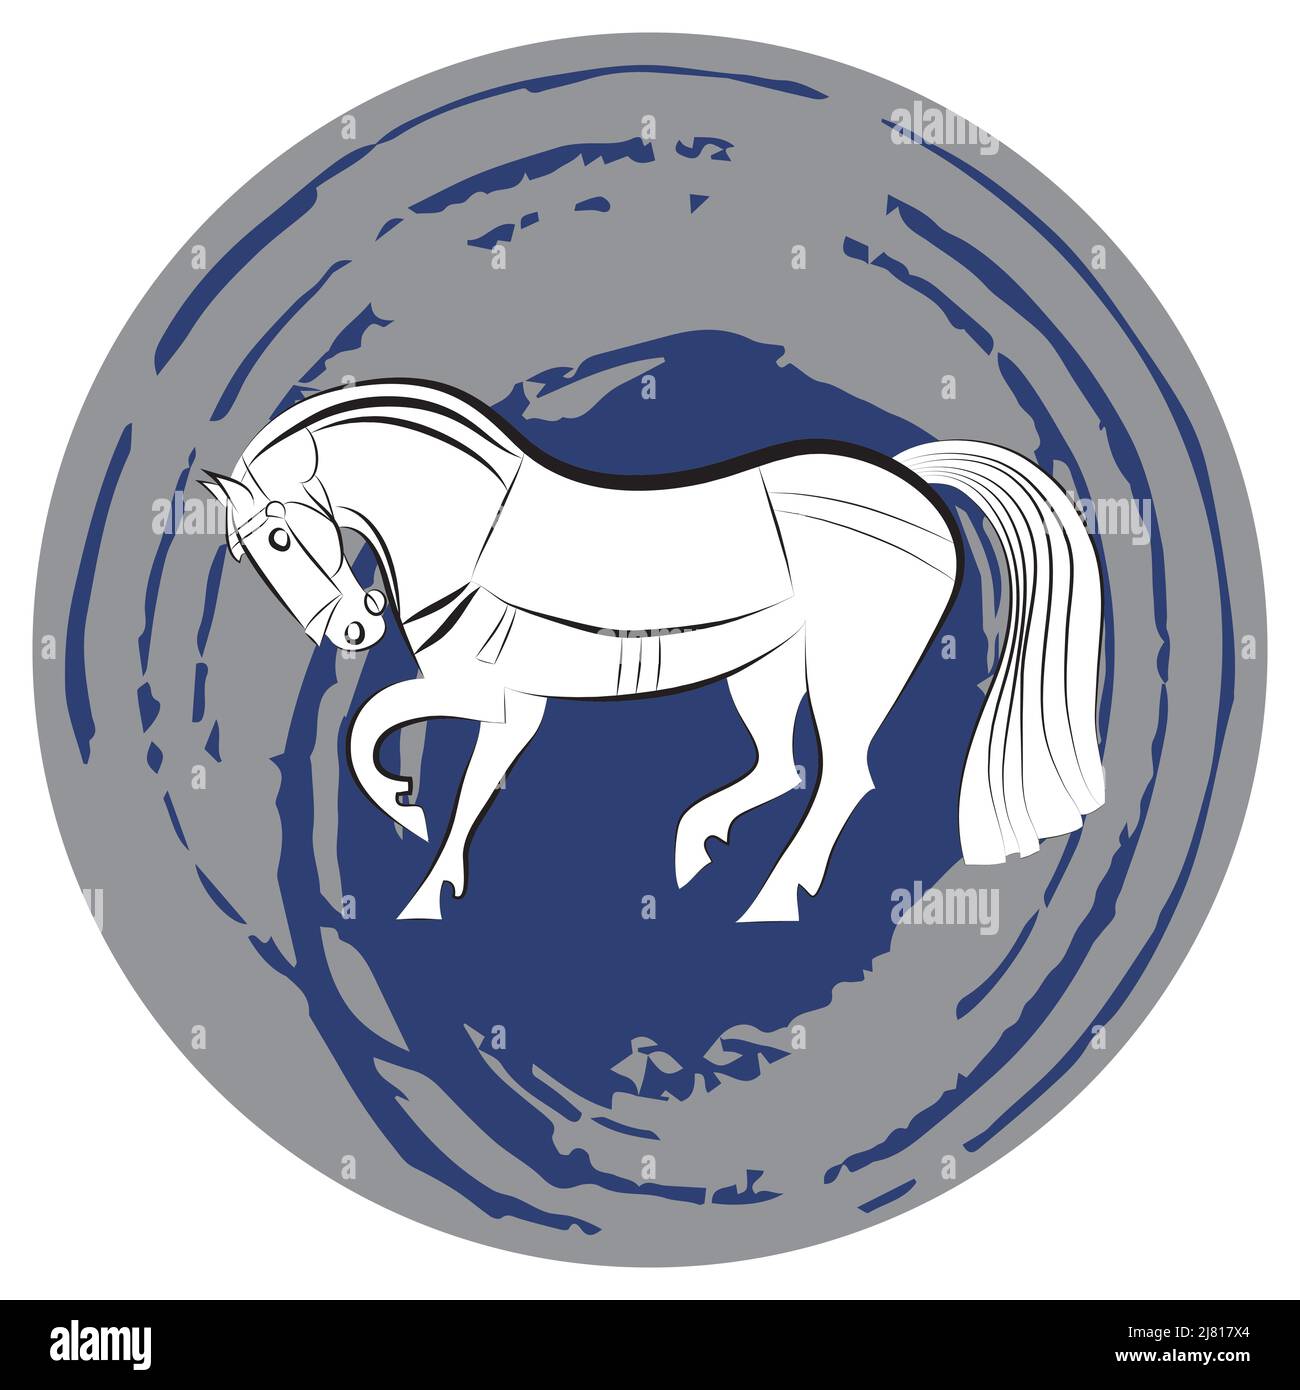 Schwarz und weiß anmutig gesattelt stehende Pferd. Eleganter Mustang auf abstraktem Grau- und Blaupunkt-Hintergrund. Silhouette des Hengstes. Pferdesport-Übersicht. S Stock Vektor